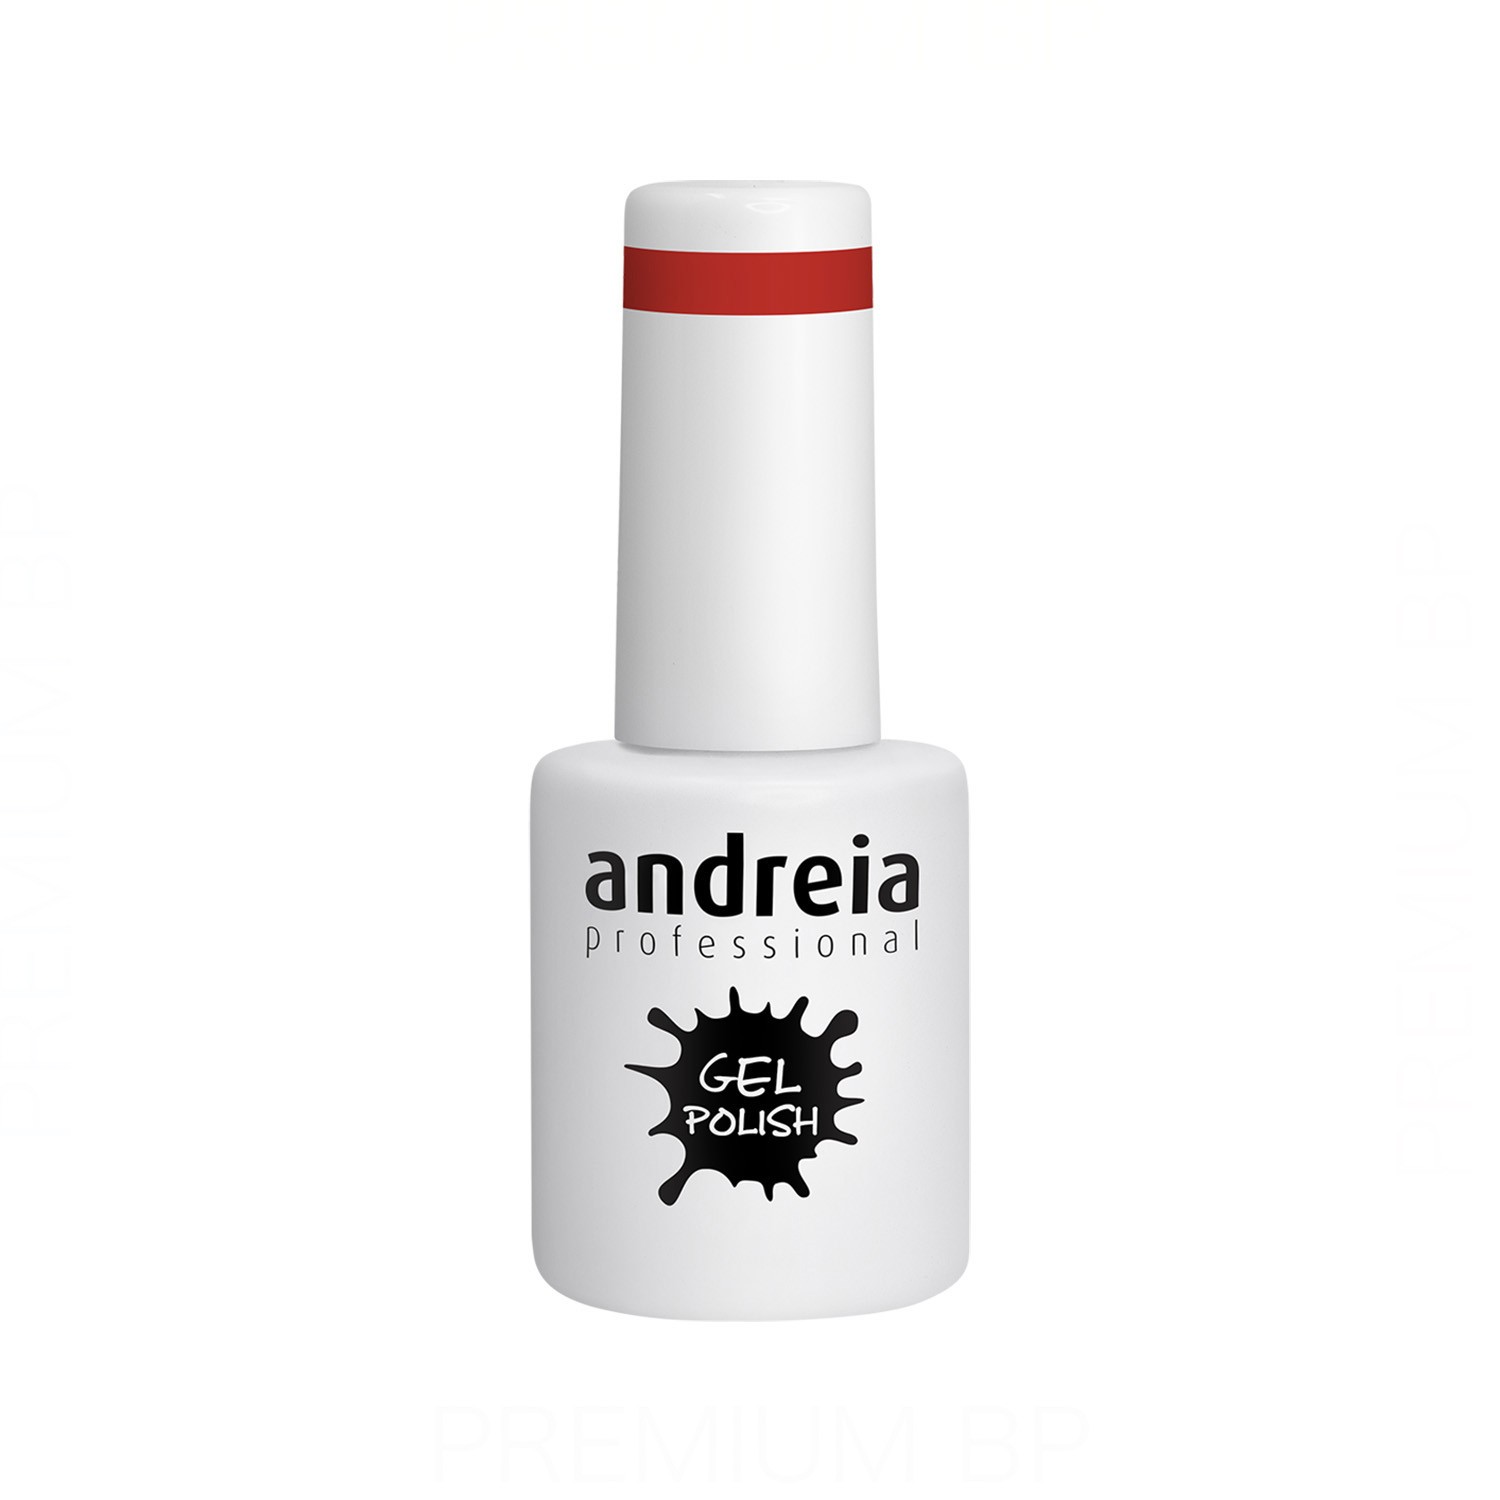 Andreia - Andreia professional gel polish esmalte semipermanente 10,5 ml color 268, esmalte semipermanente con duración de 4 semanas color rojo